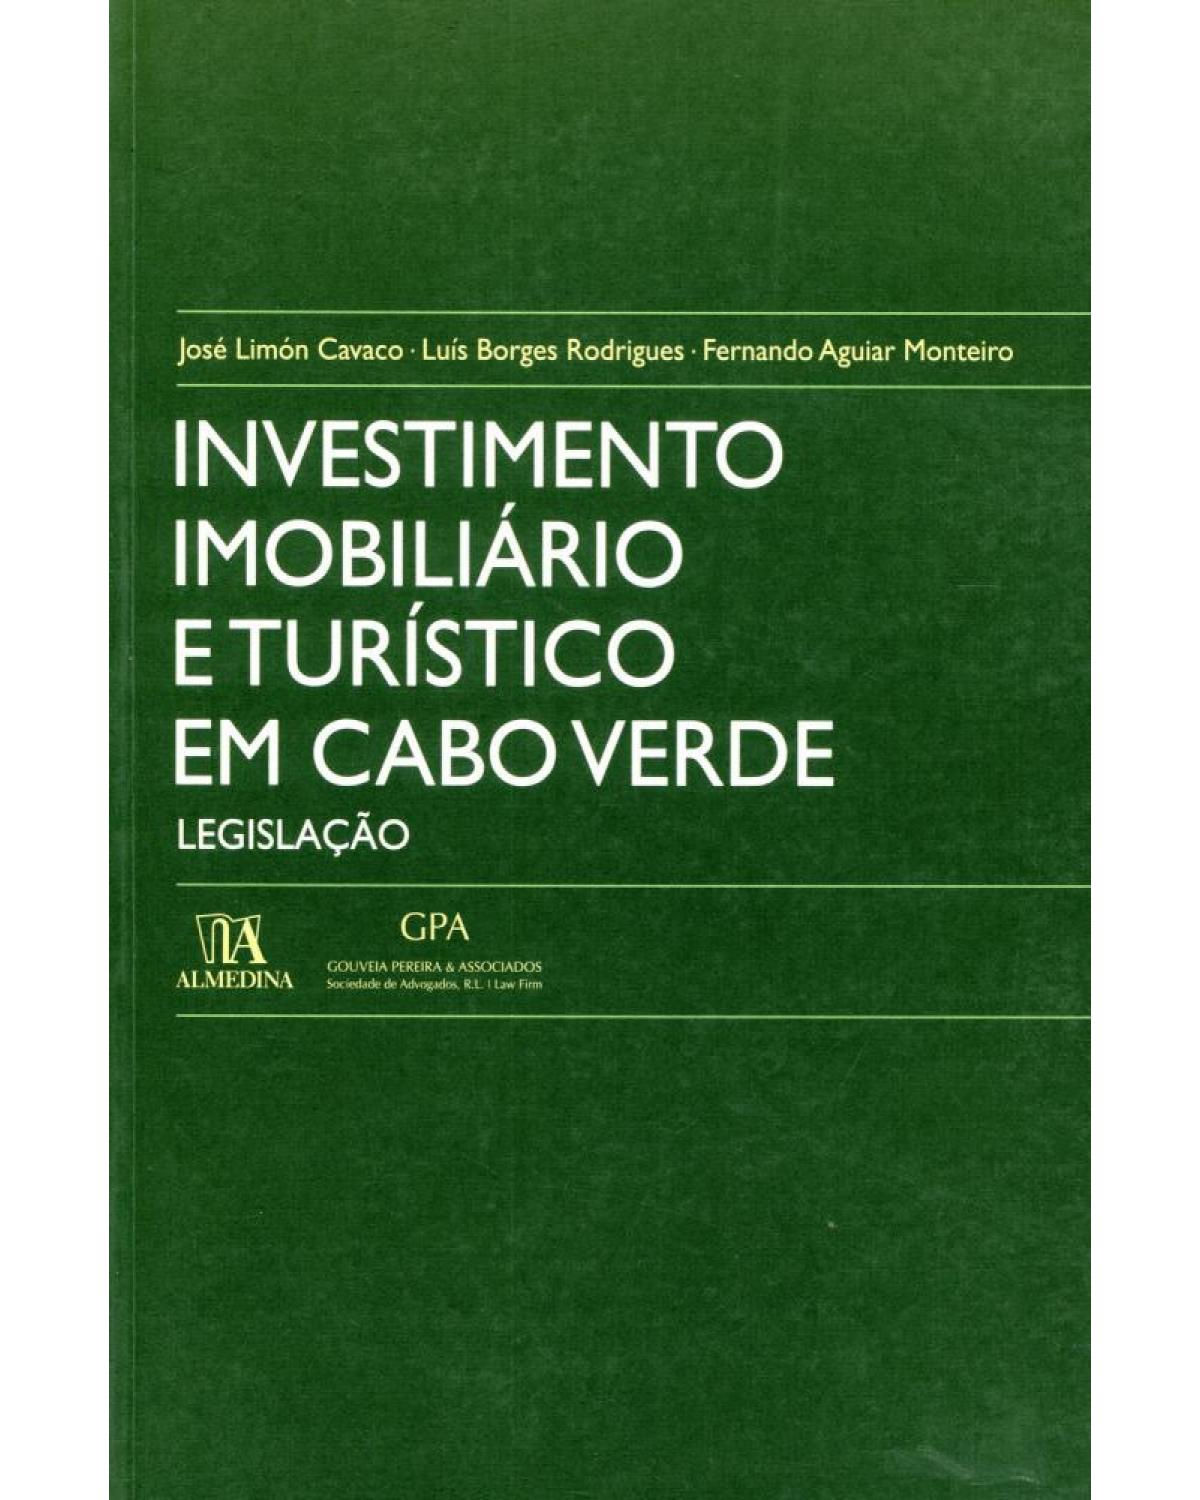 Investimento imobiliário e turístico em Cabo Verde - legislação - 1ª Edição | 2010